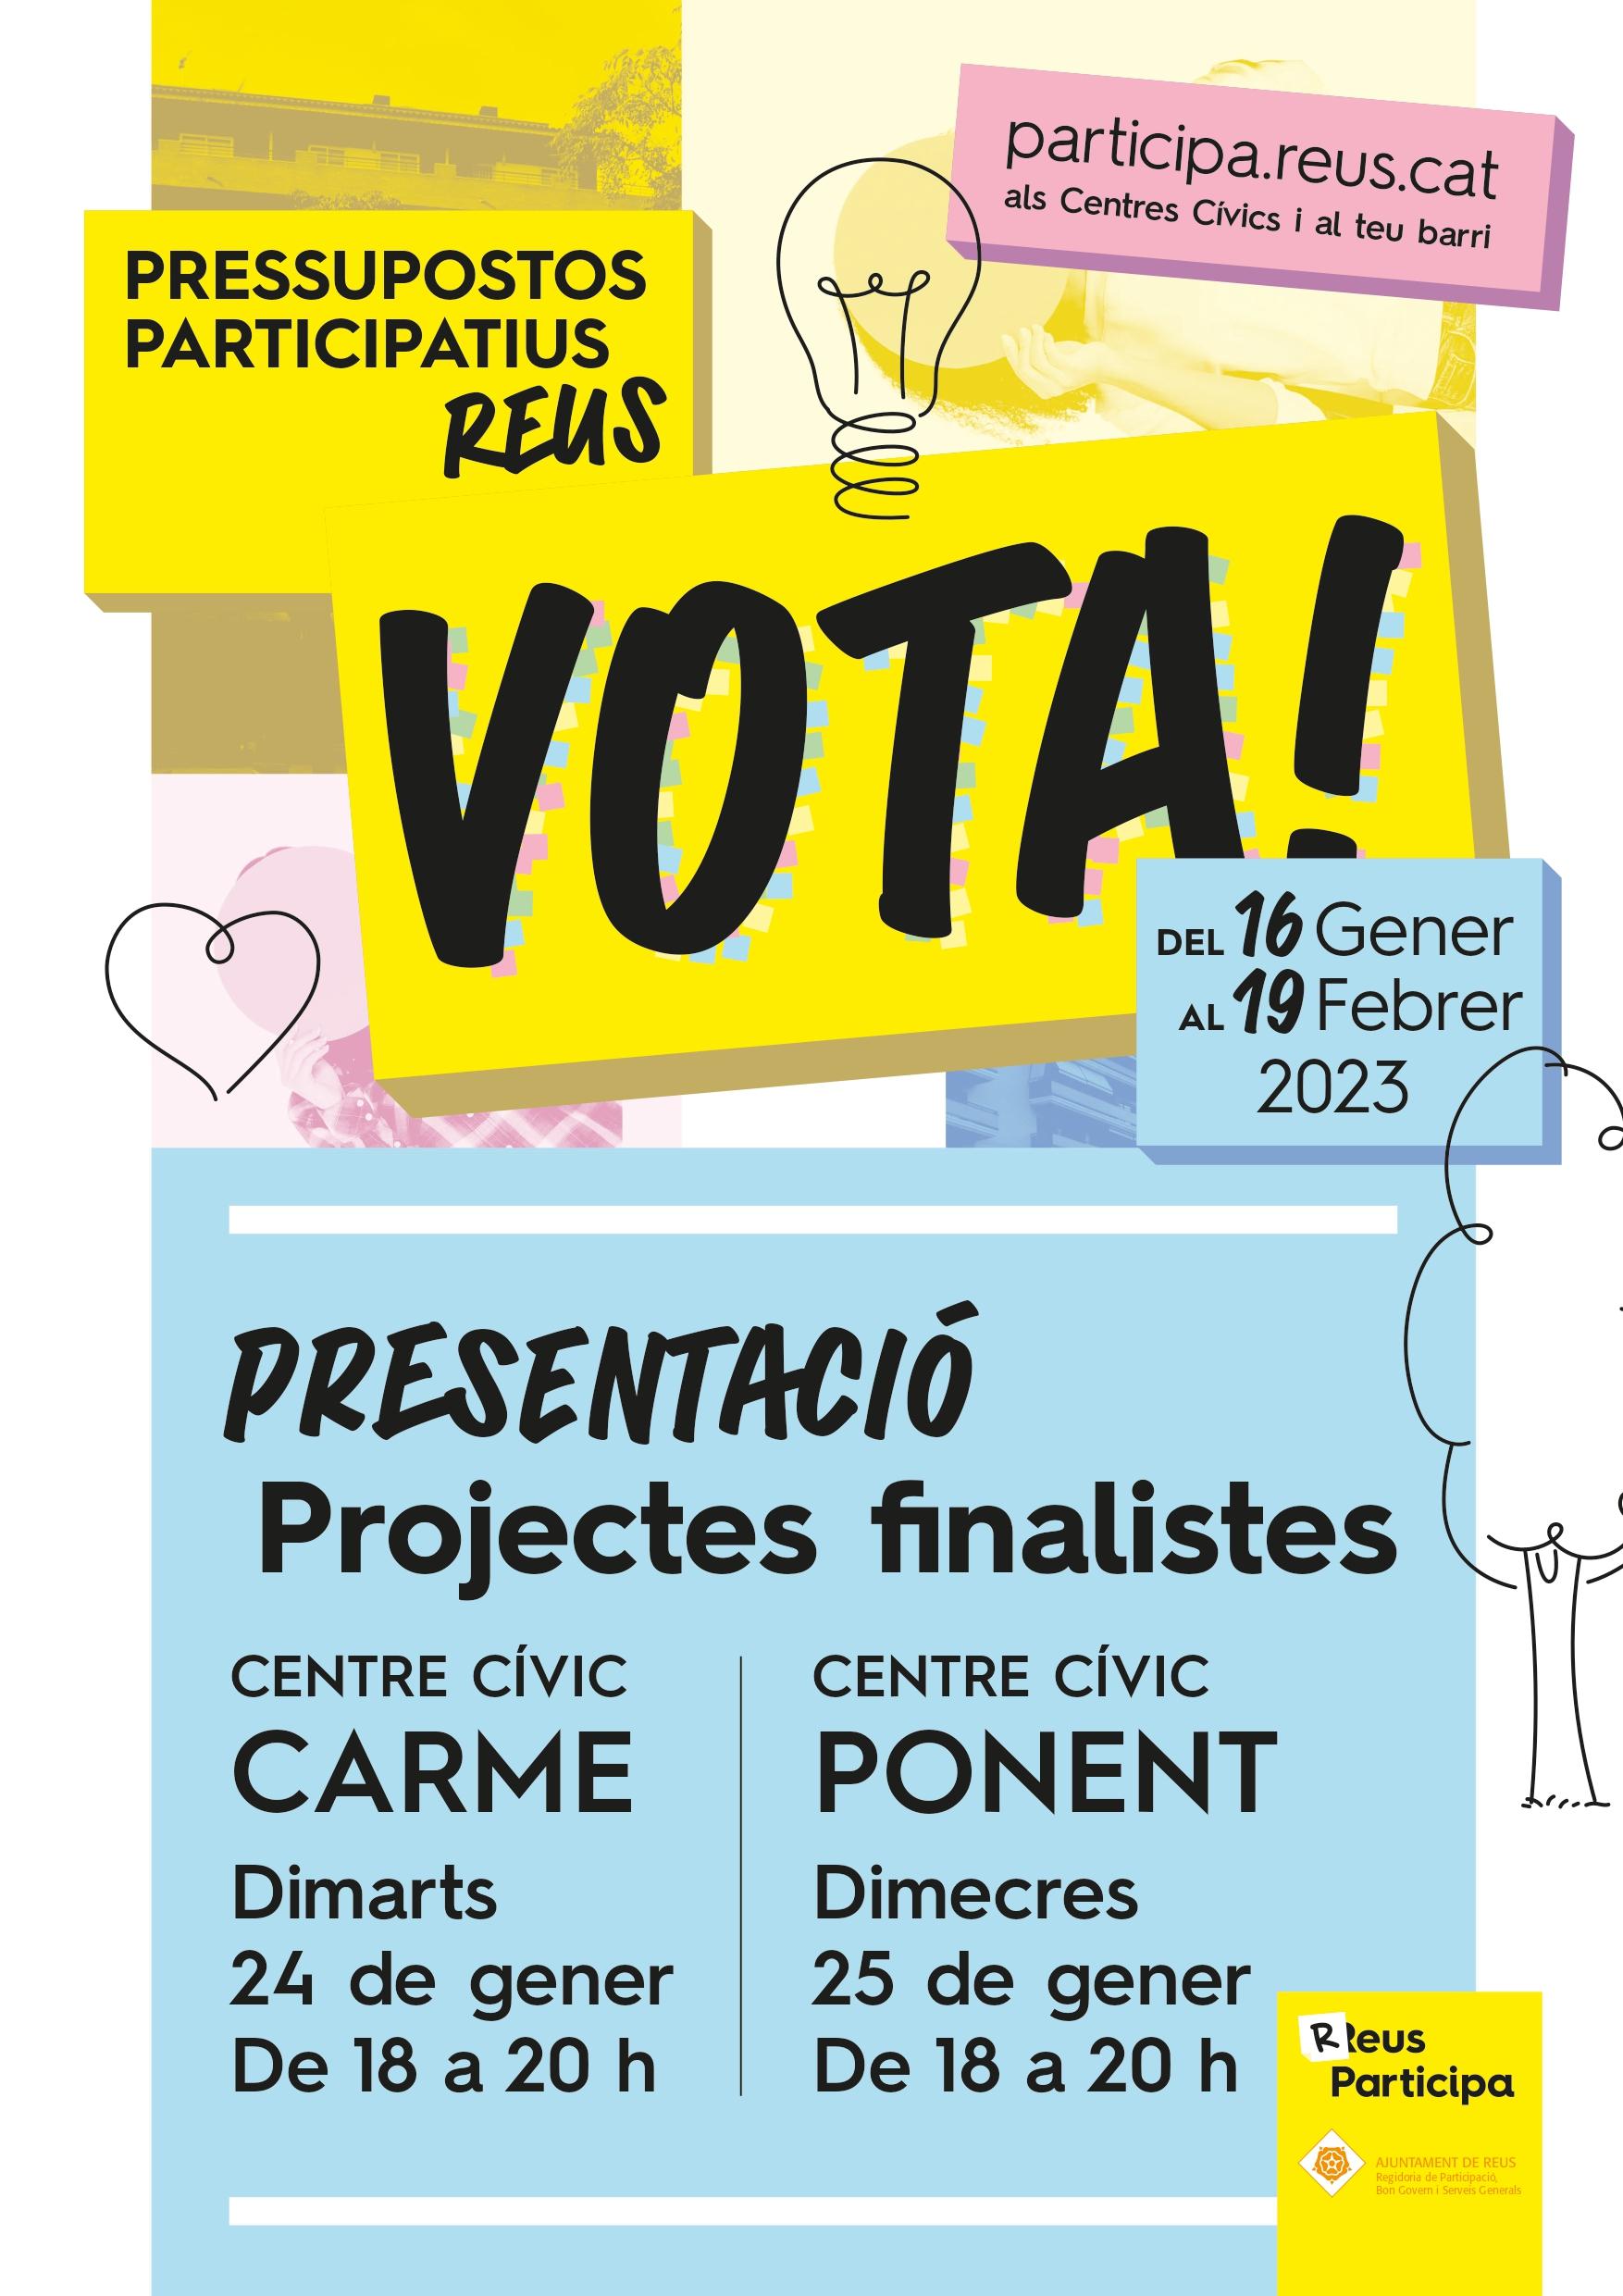 Presentació dels projectes finalistes dels Pressupostos Participatius 2022